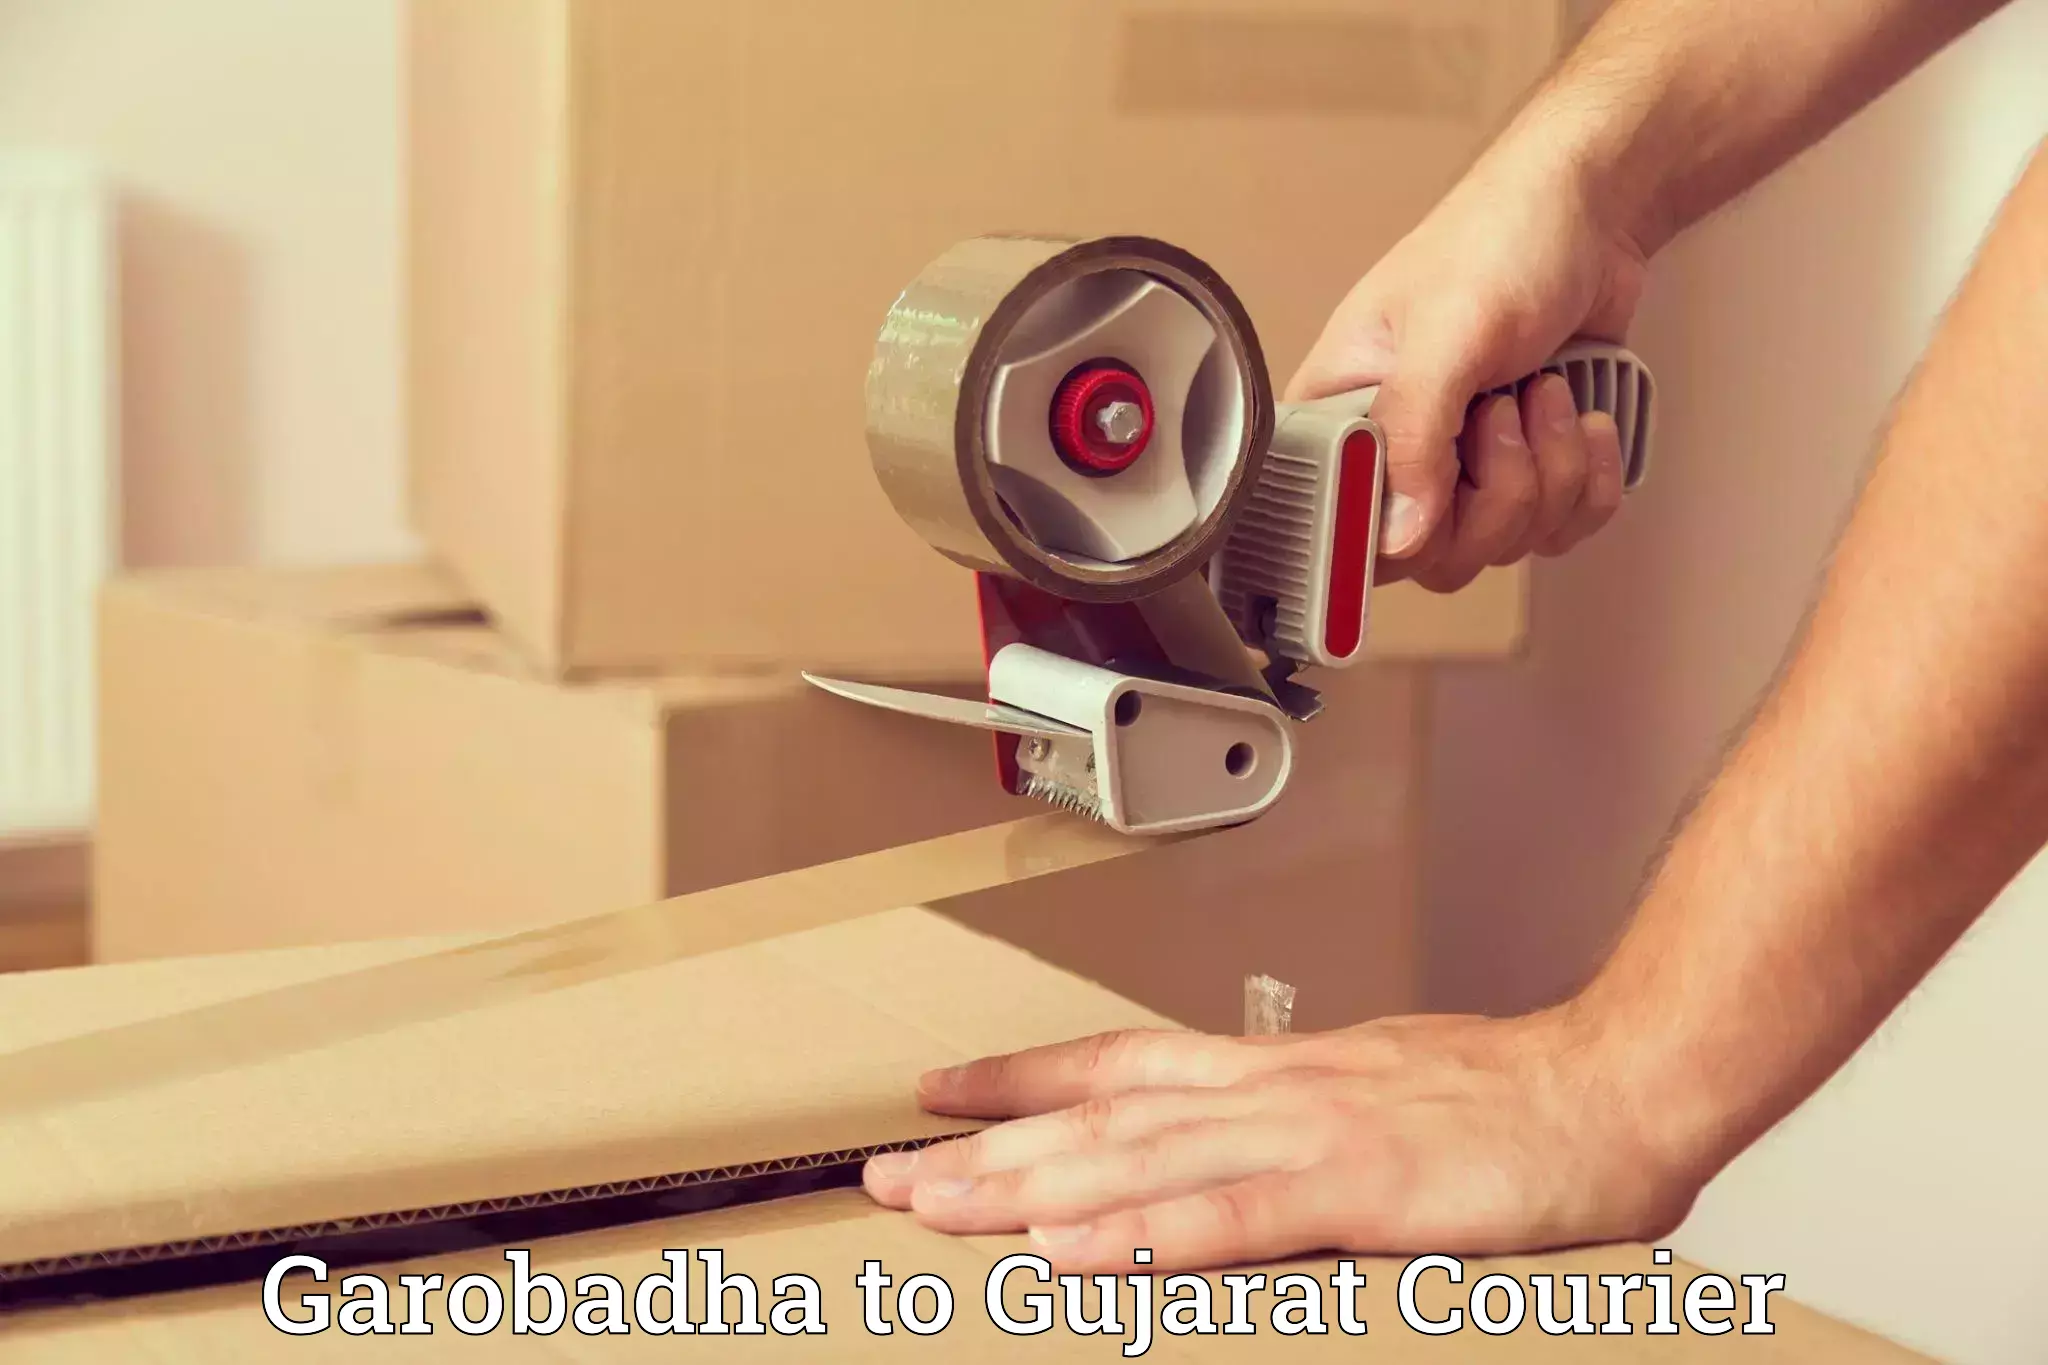 Furniture moving experts in Garobadha to Gujarat